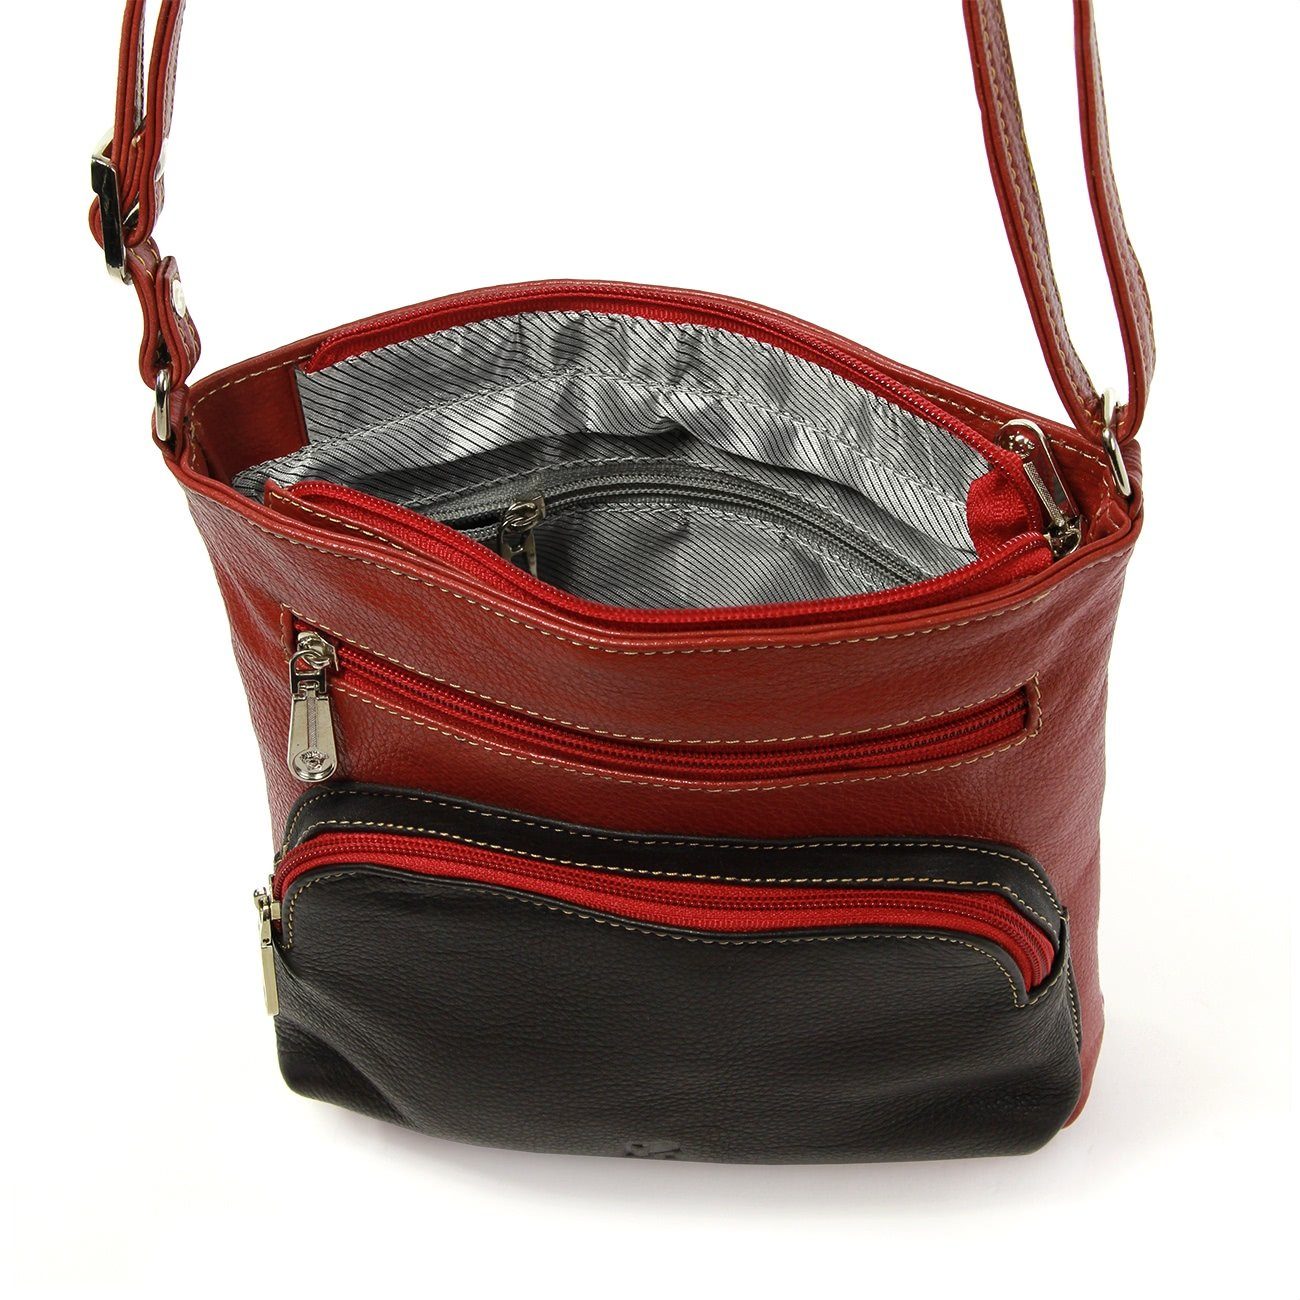 DrachenLeder braun Echtleder DrachenLeder (Handtasche), Handtasche OTZ900X Damen Damen schwarz, Tasche, Handtasche rot